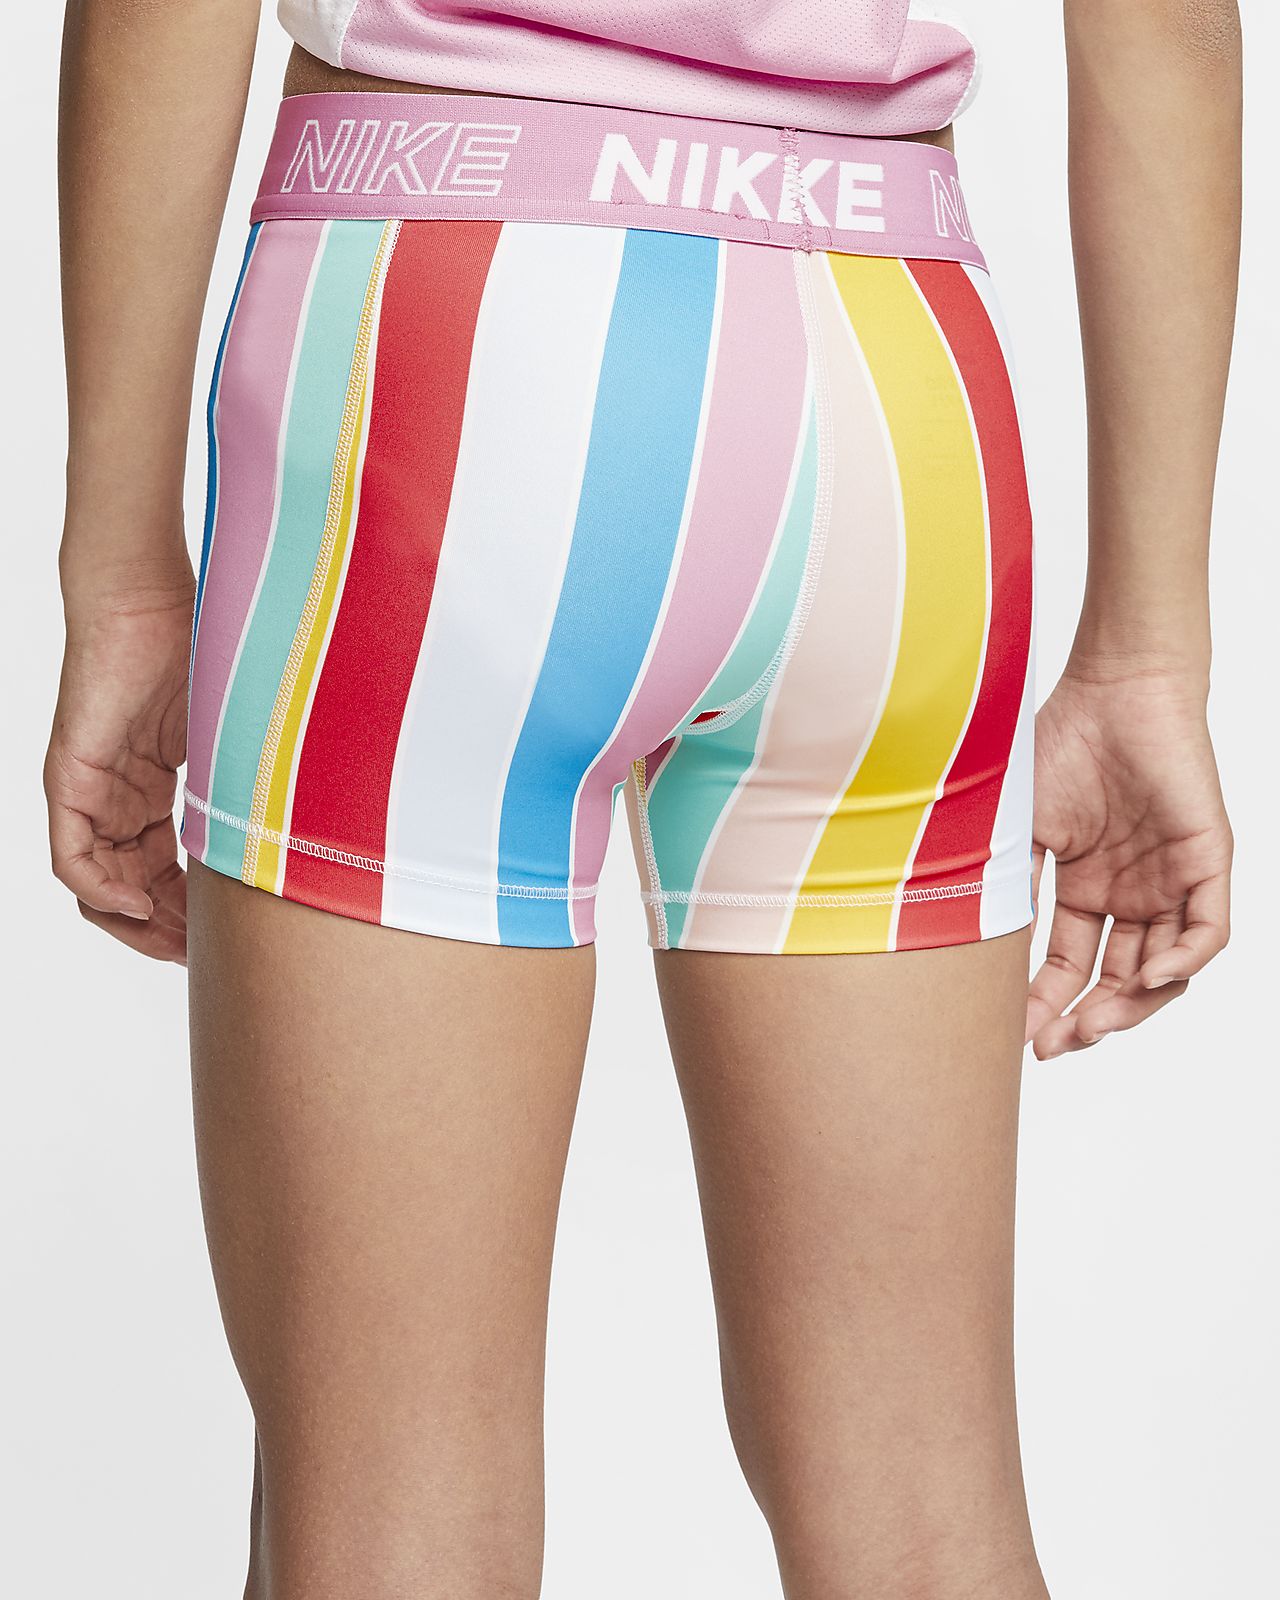 nike cycling shorts girls